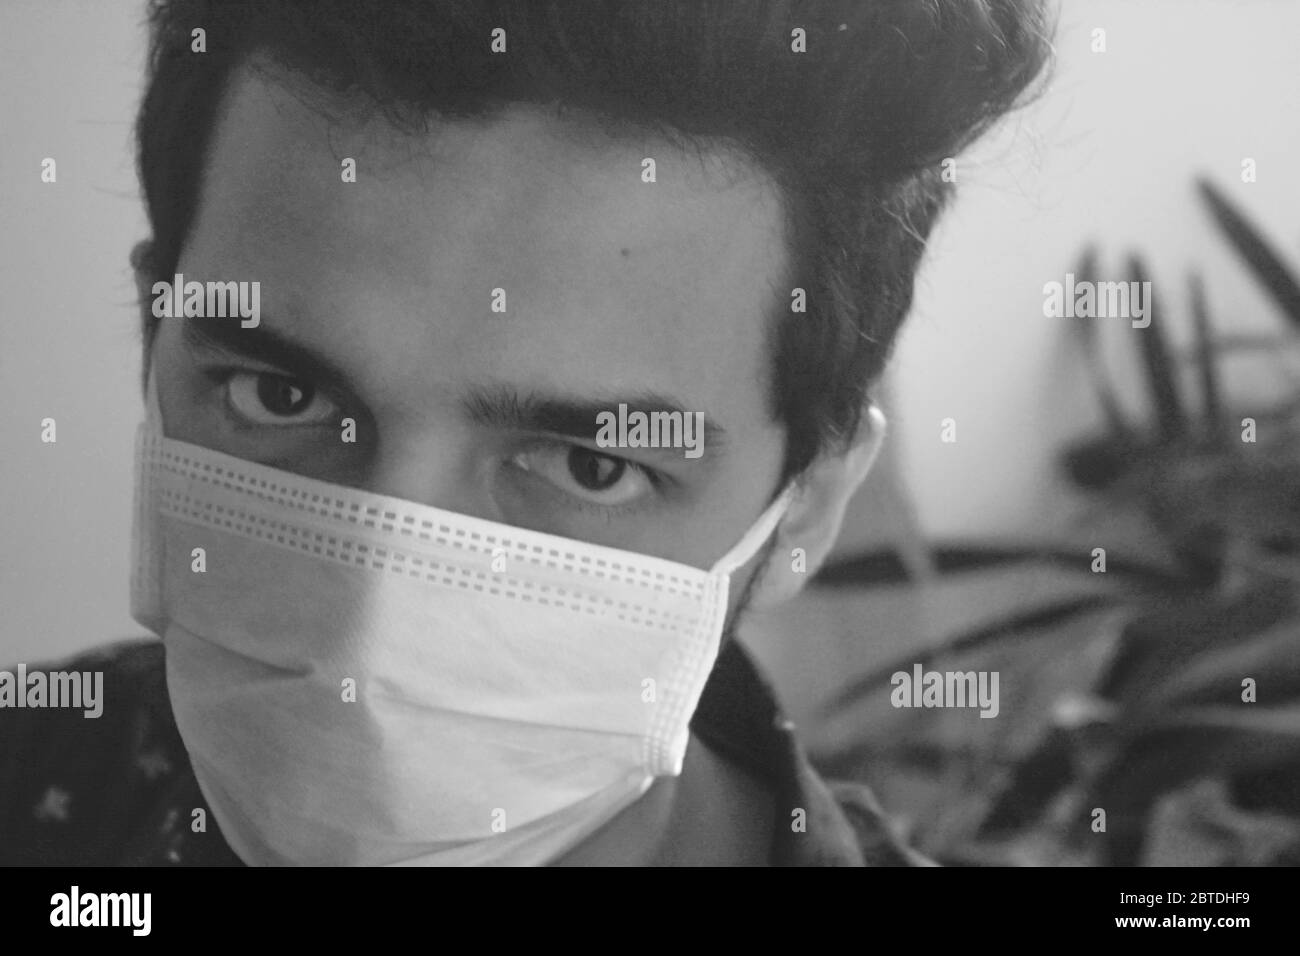 il concept de prévenir la propagation du virus de la corona épidémique. homme portant un masque facial et regardant la caméra., photo noir et blanc. Banque D'Images